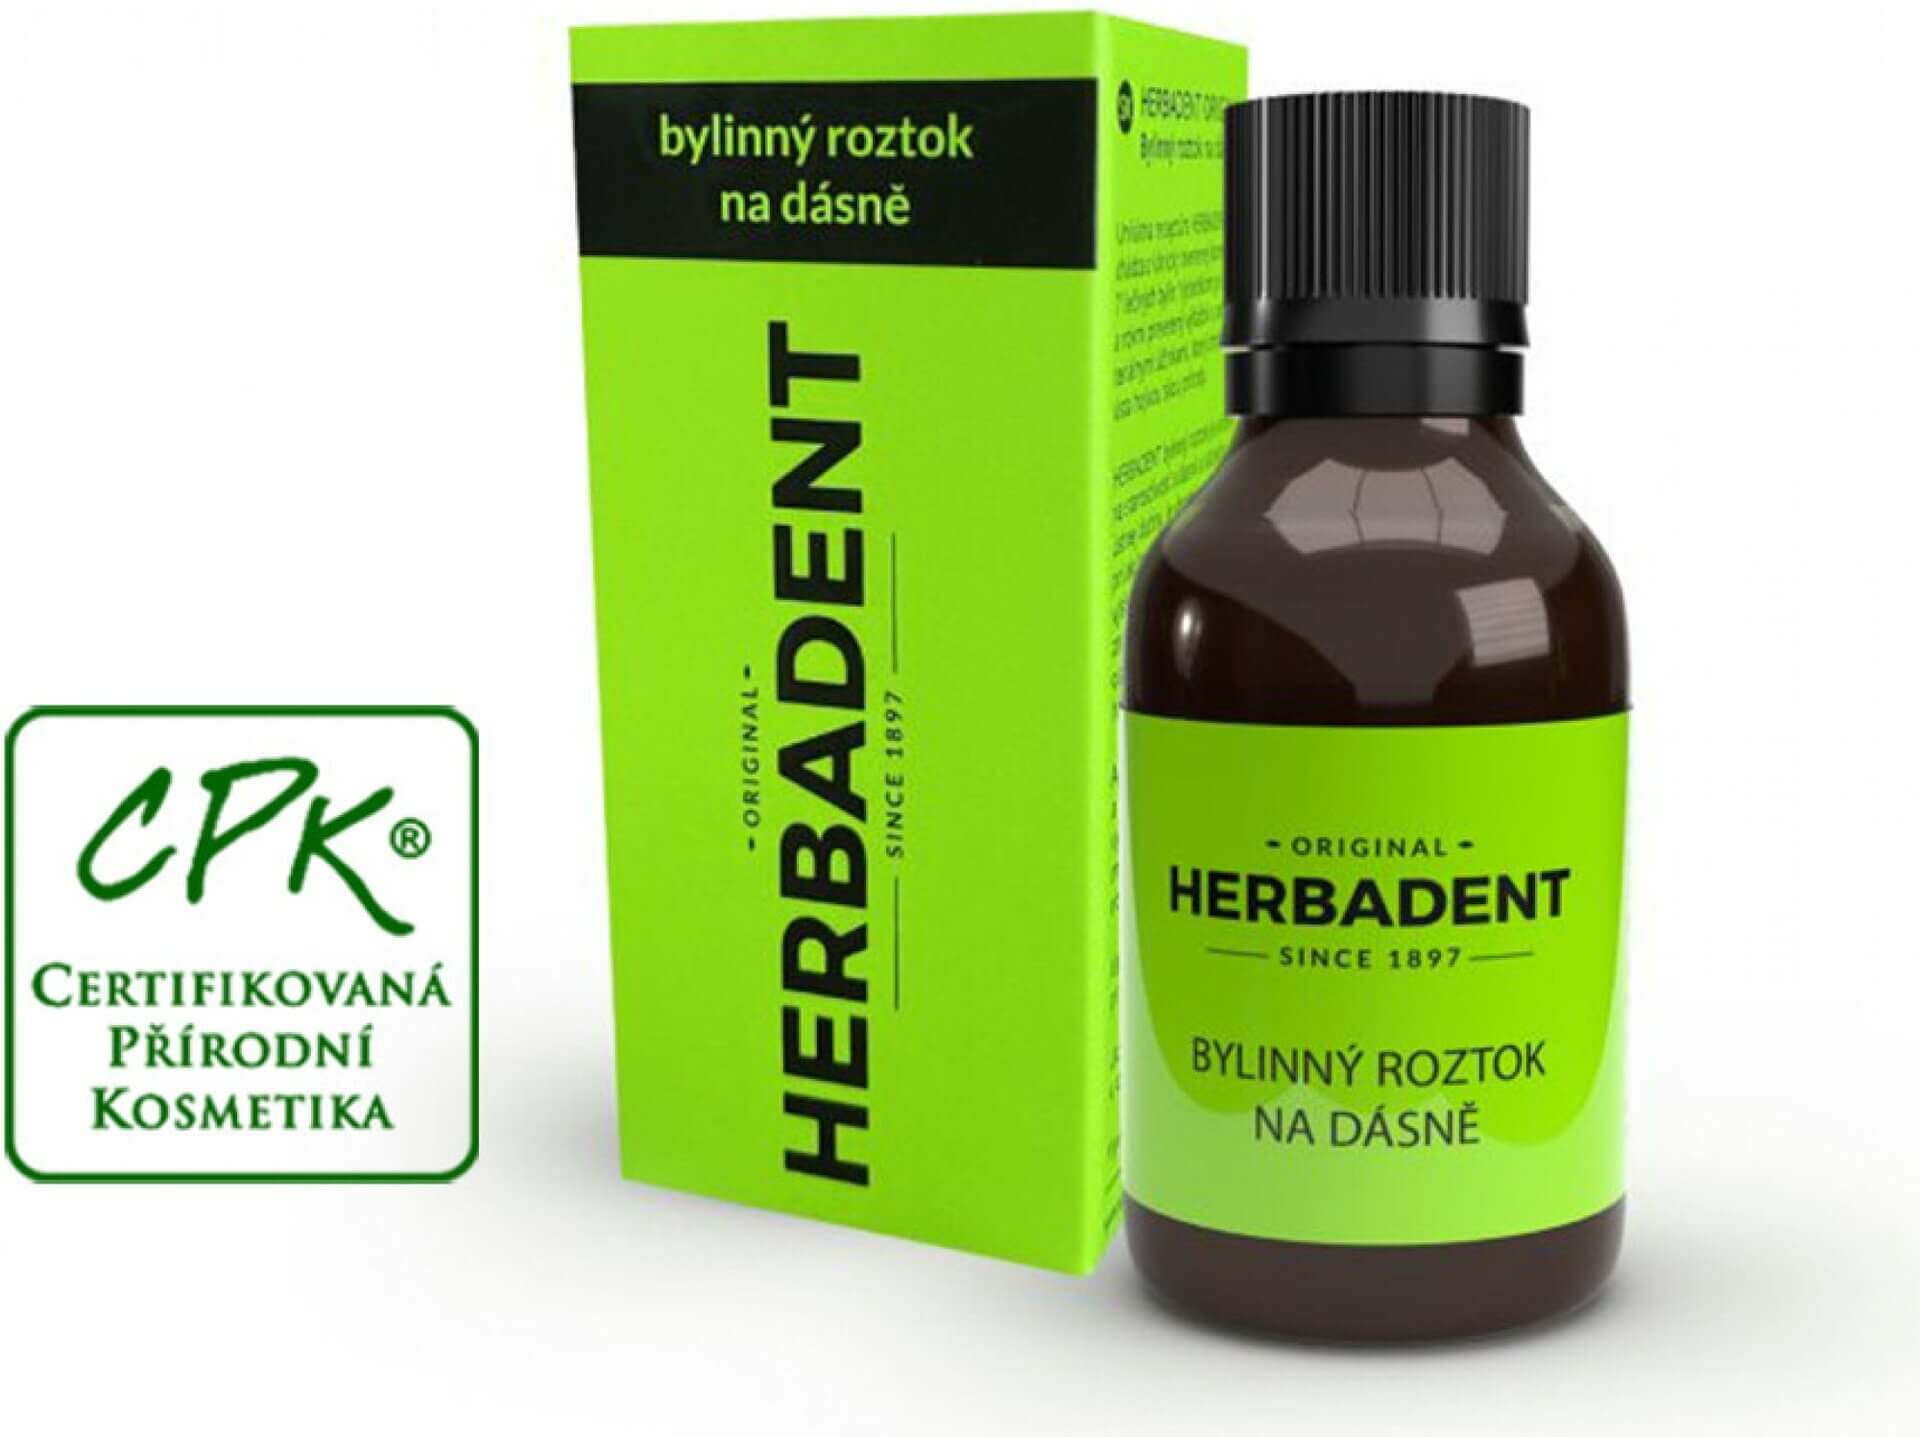 Značka HERBADENT - HERBADENT Original Bylinný roztok na ďasná 25ml - Herbadent PROFESSIONAL bylin. roztok na dásně 25ml